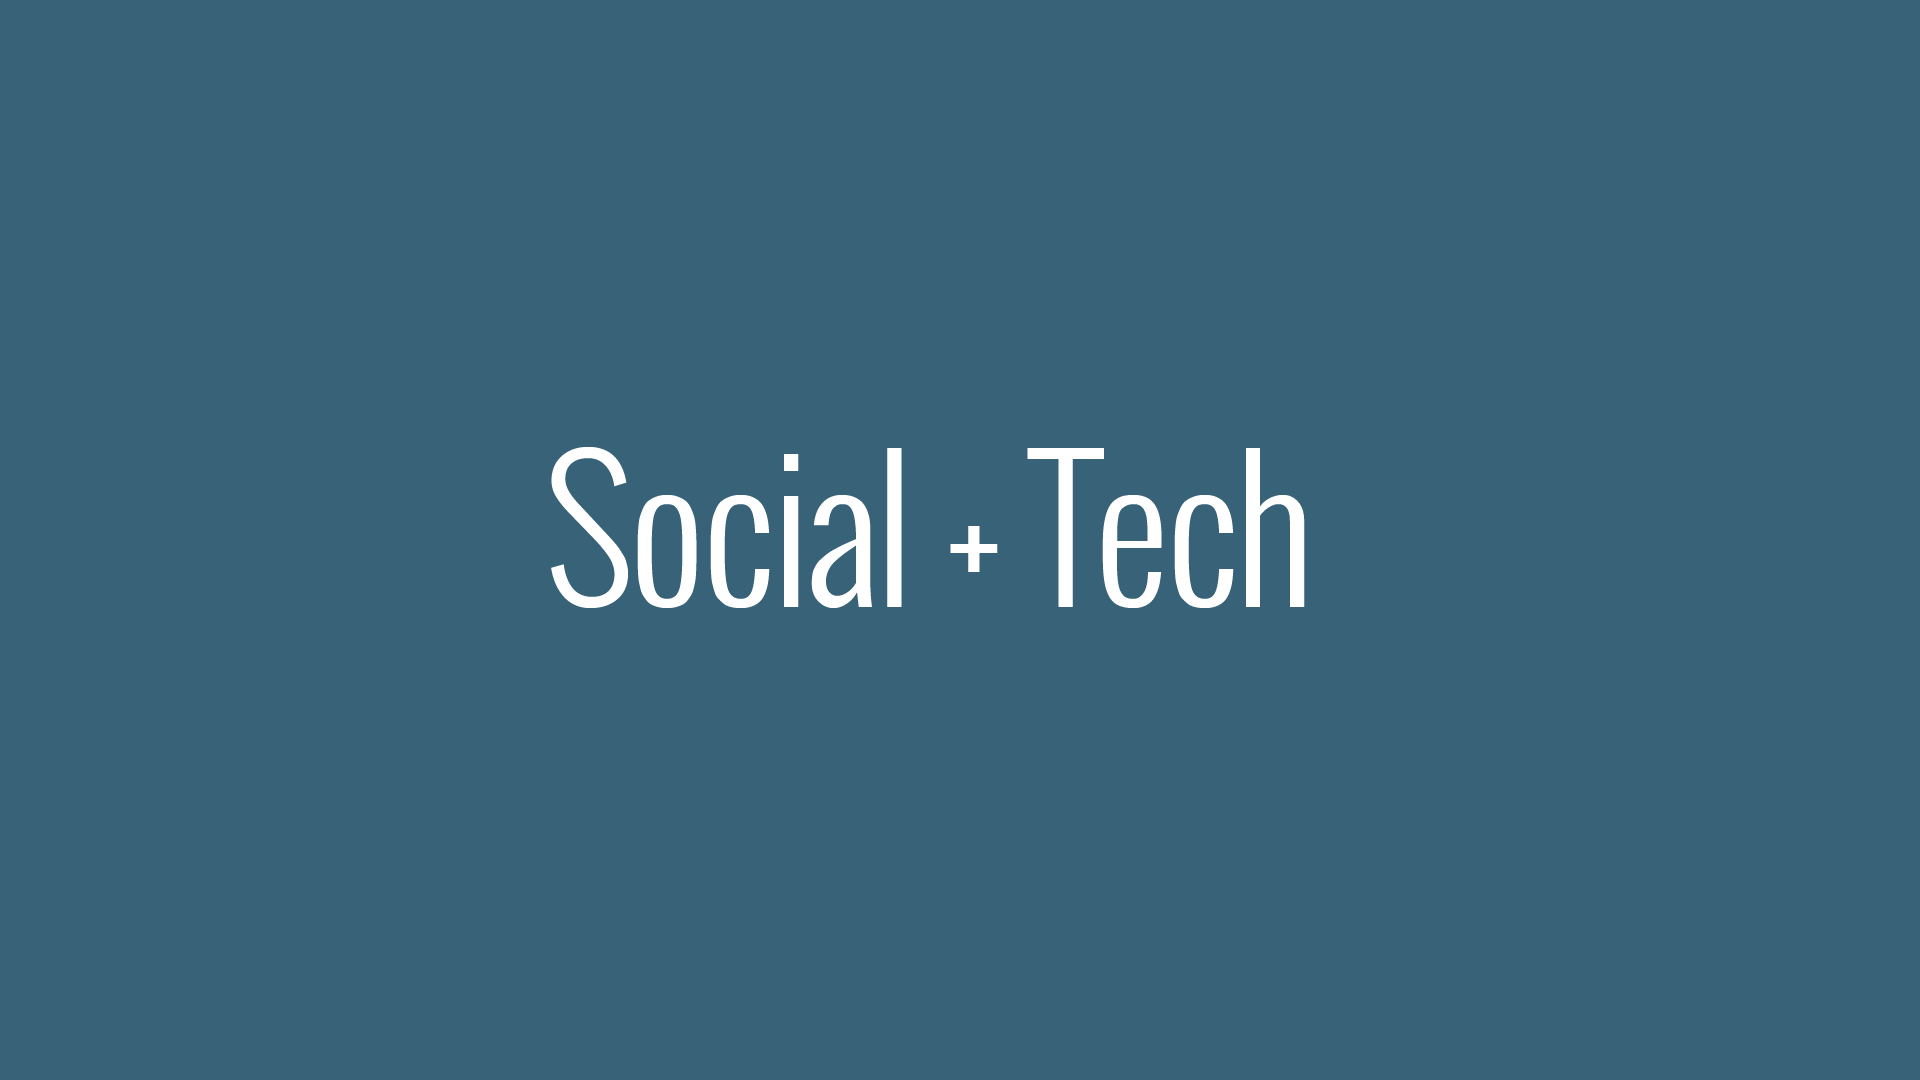 #SocialTech serán diferentes: factores para tener cuenta 2017